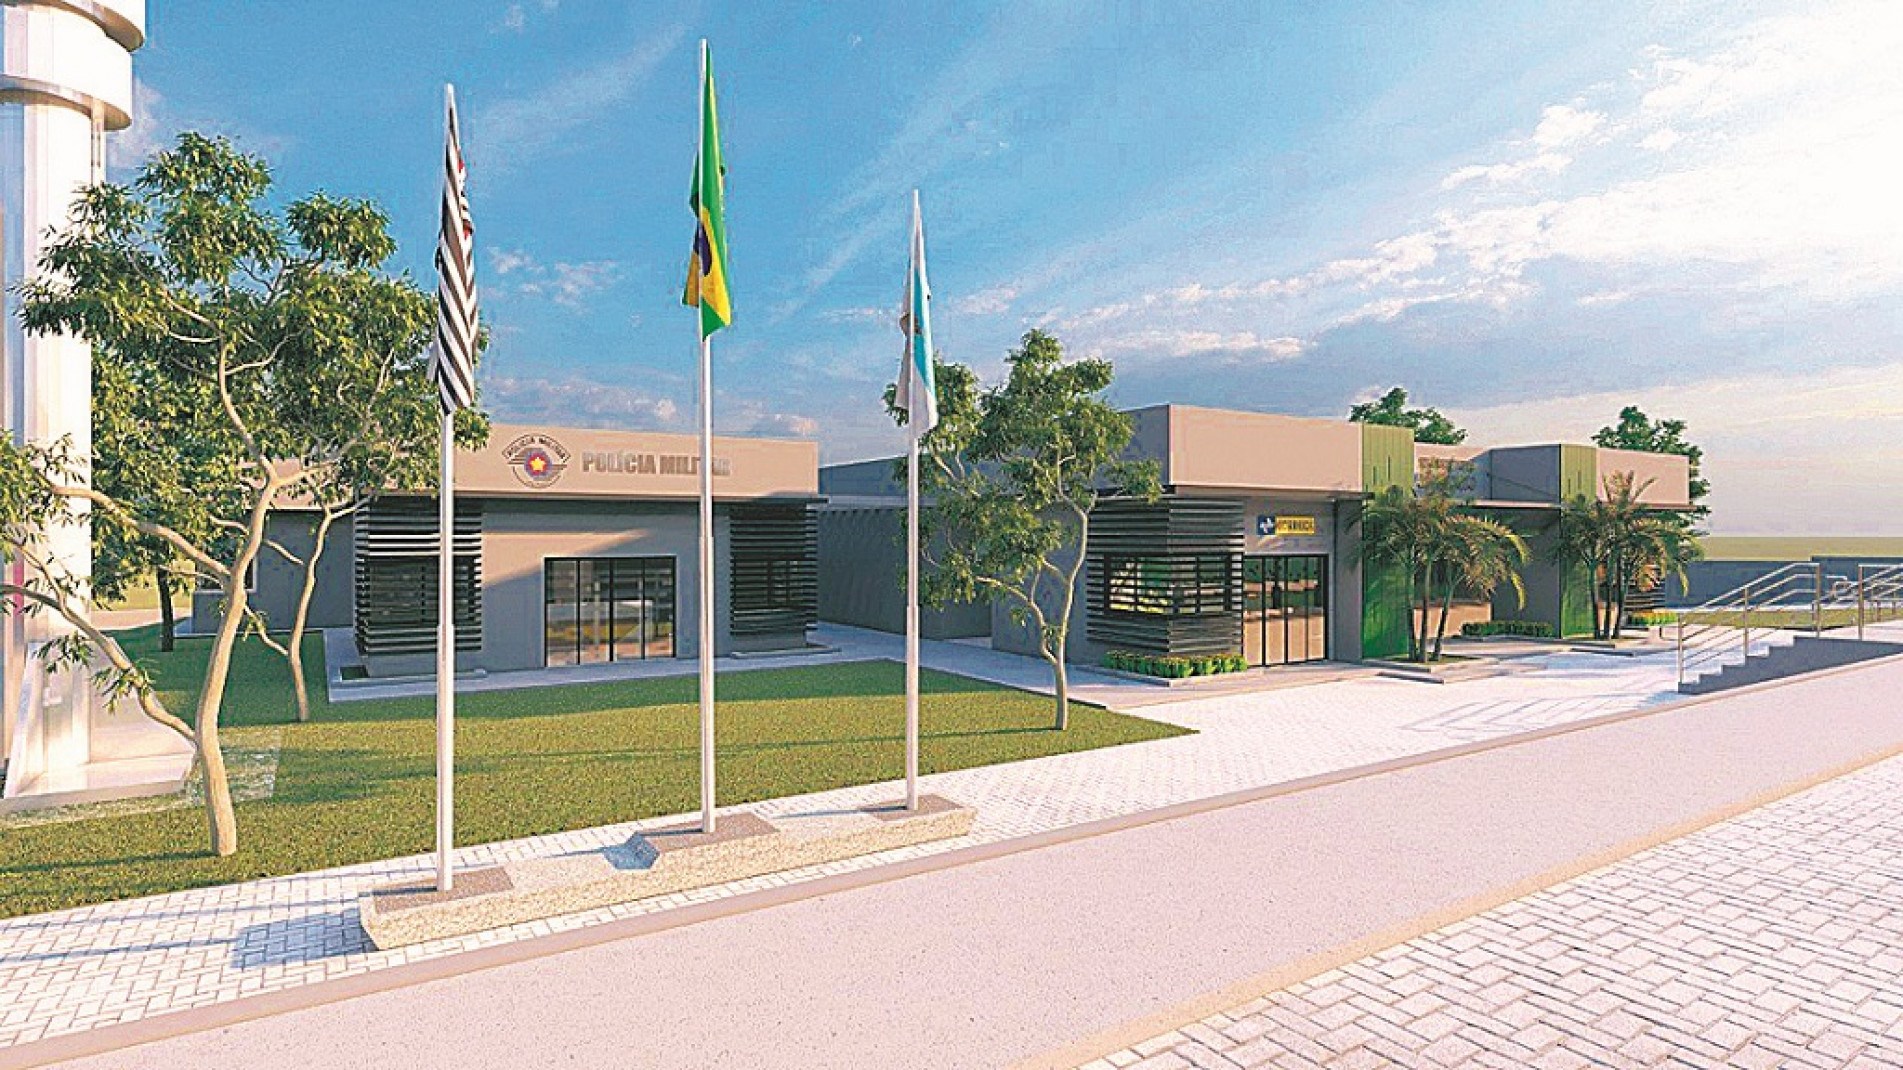 A nova sede da Administração Regional (Arva) contará com Correios, Serviços Administrativos e Tributários, entre outros